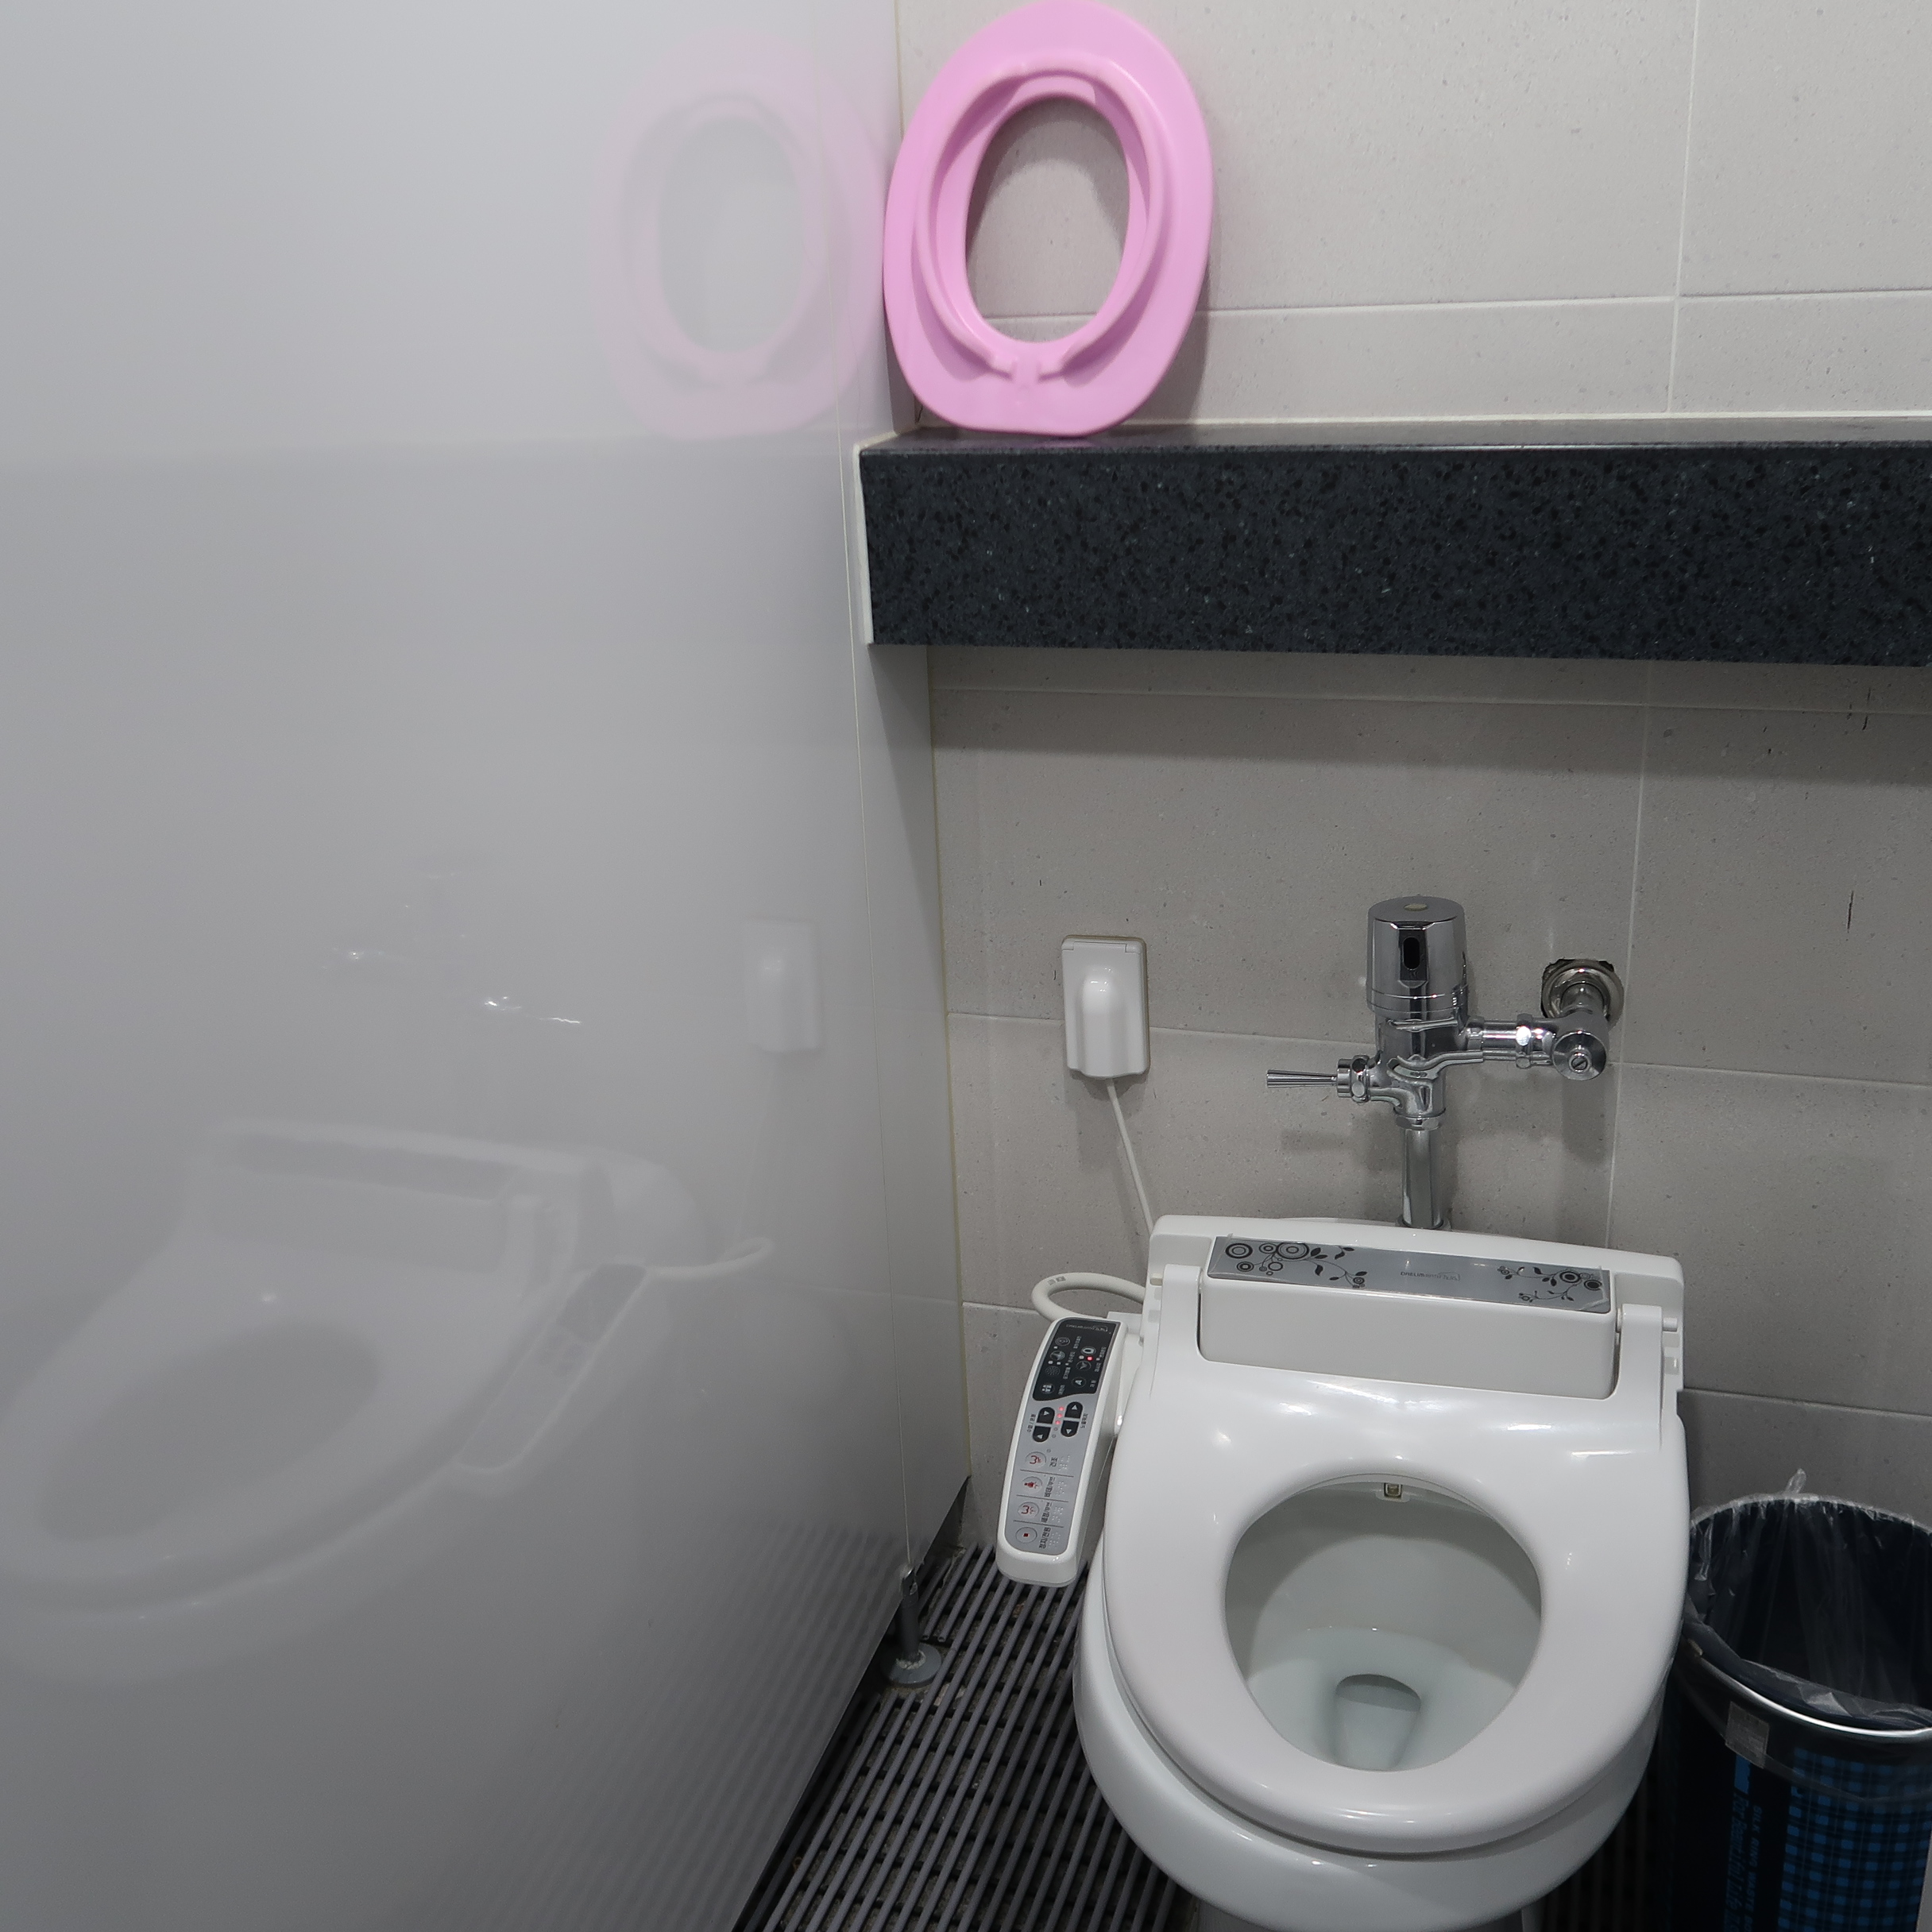 영유아 편의시설0 : 점프스카이 송파점 화장실에 설치된 유아용 변기